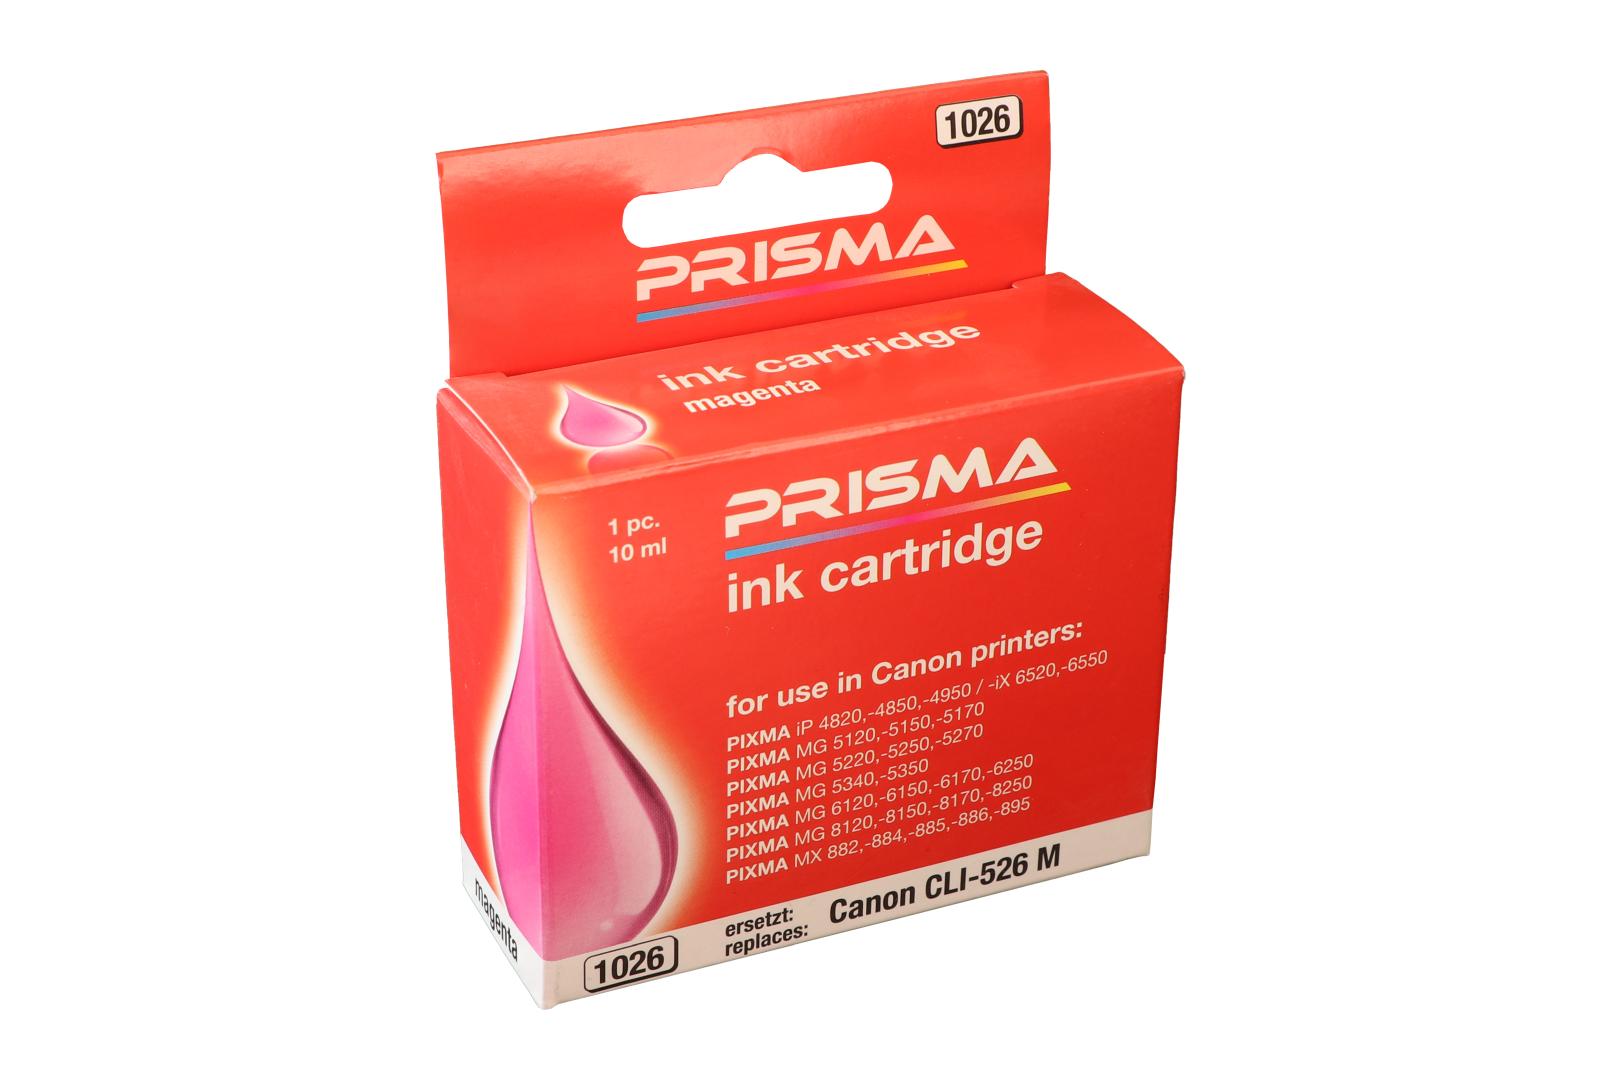 PRISMA 1026 Druckerpatrone für Canon Tintenstrahldrucker, magenta, 10 ml